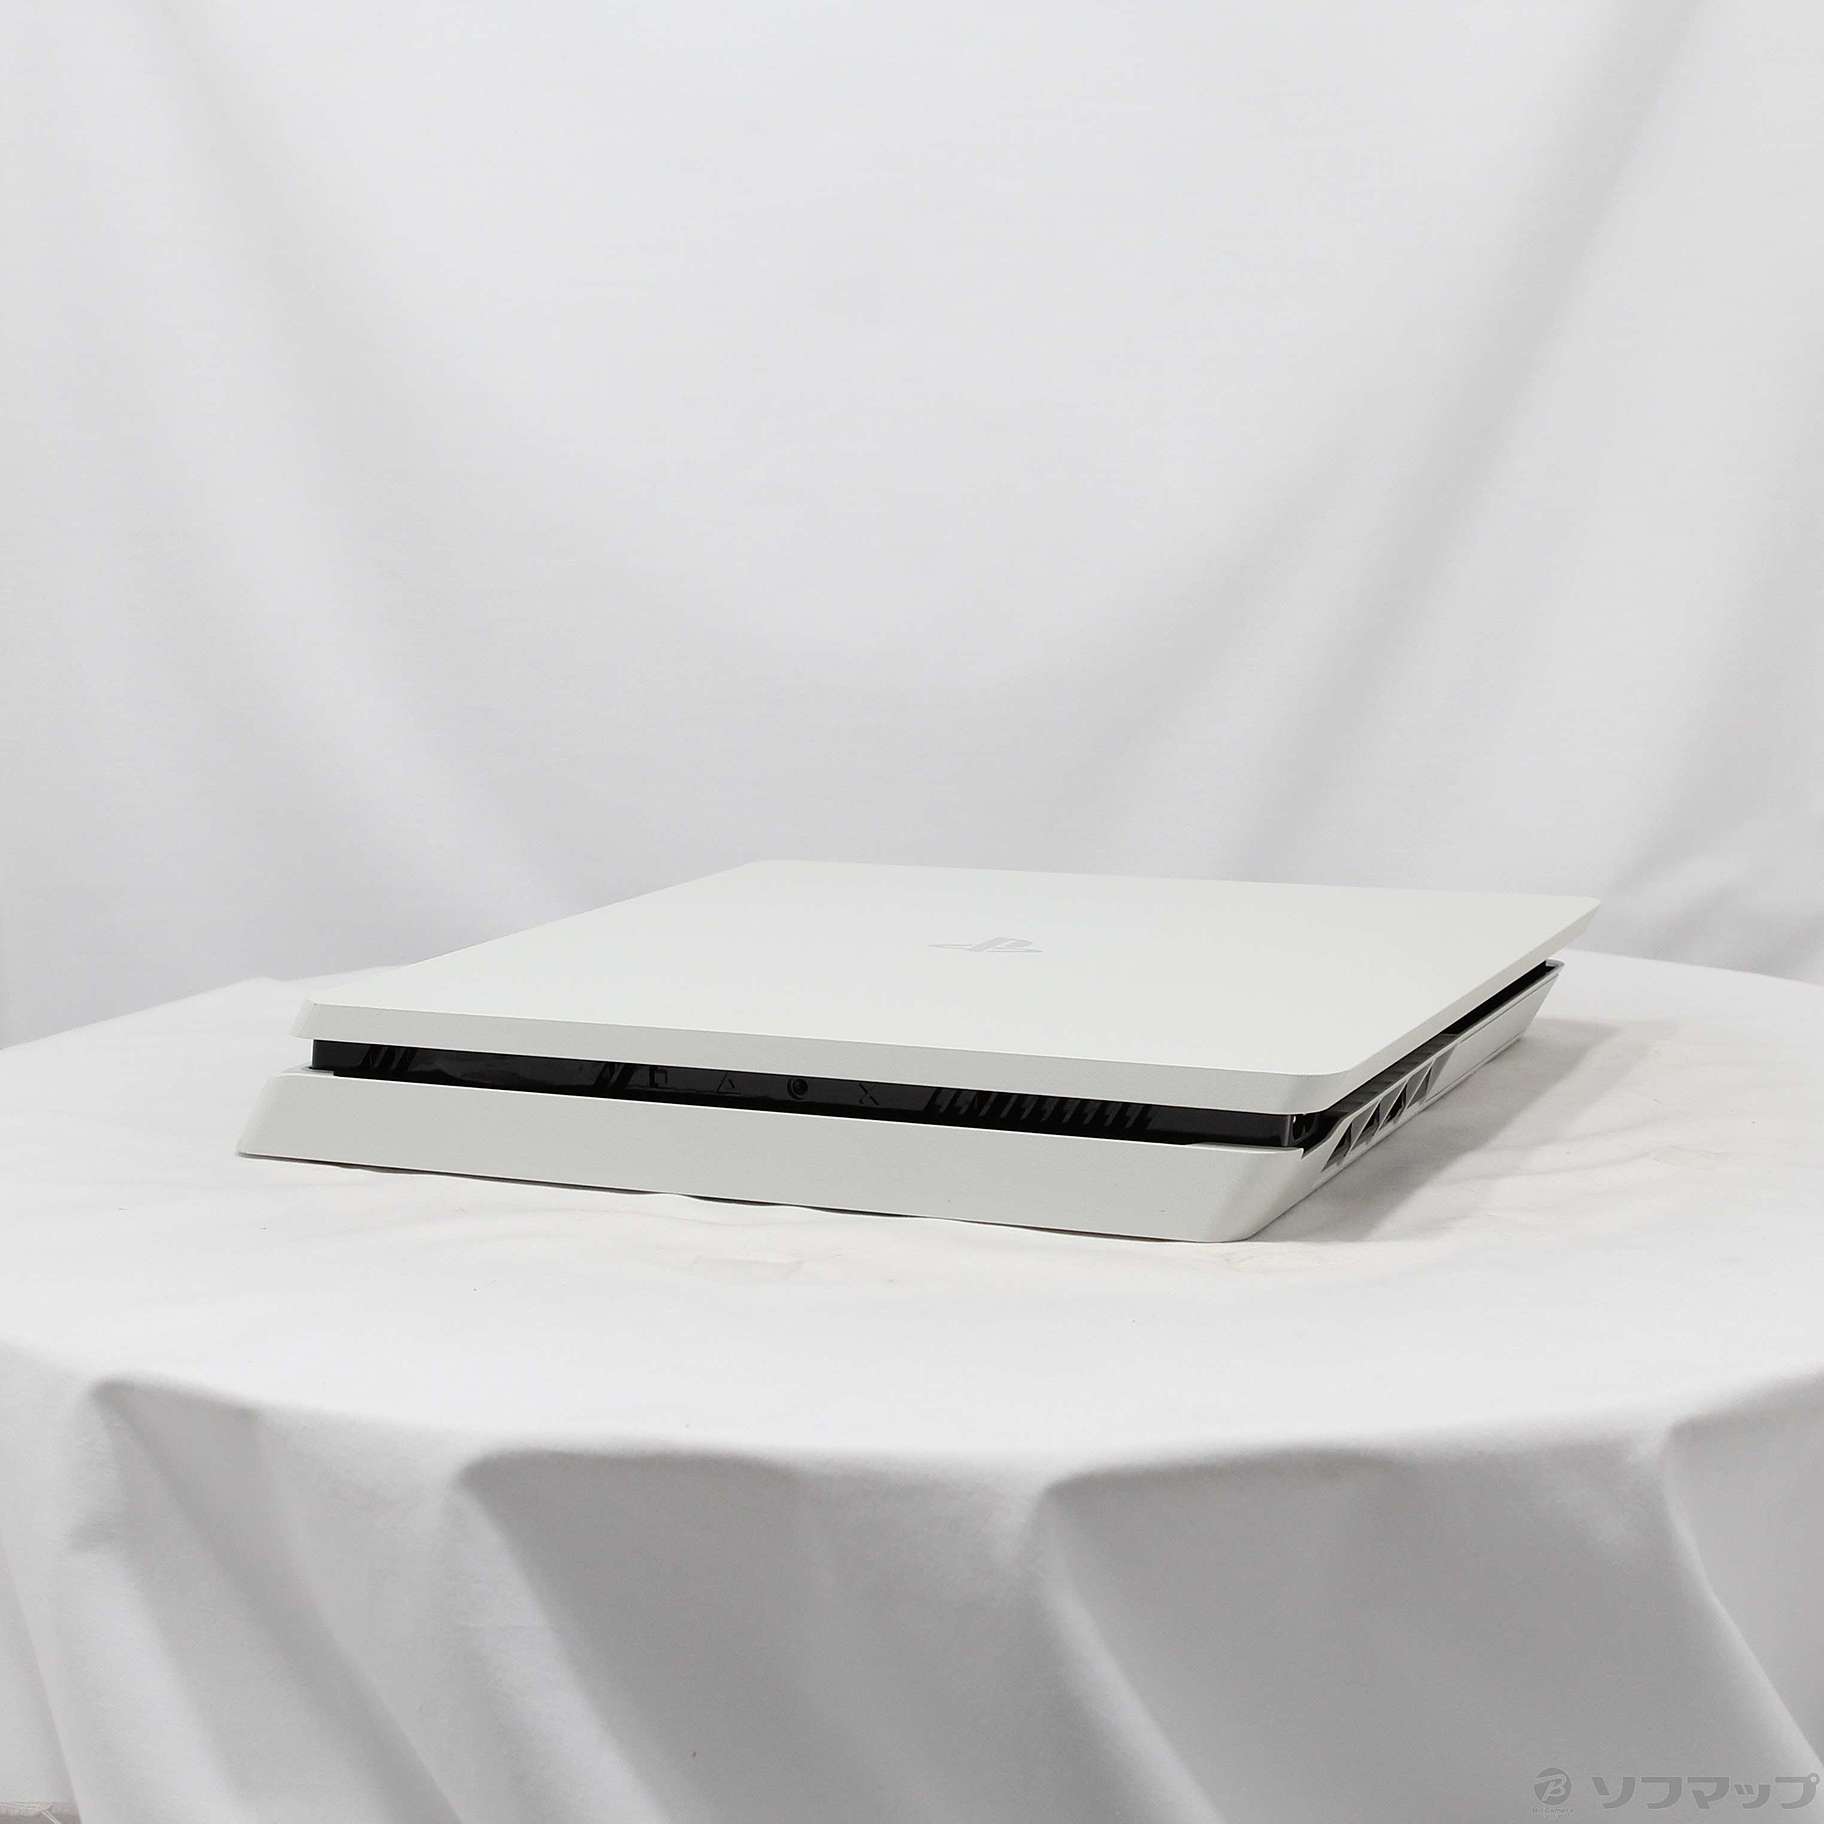 【新品未開封】PlayStation®4 グレイシャー・ホワイト 500GB C